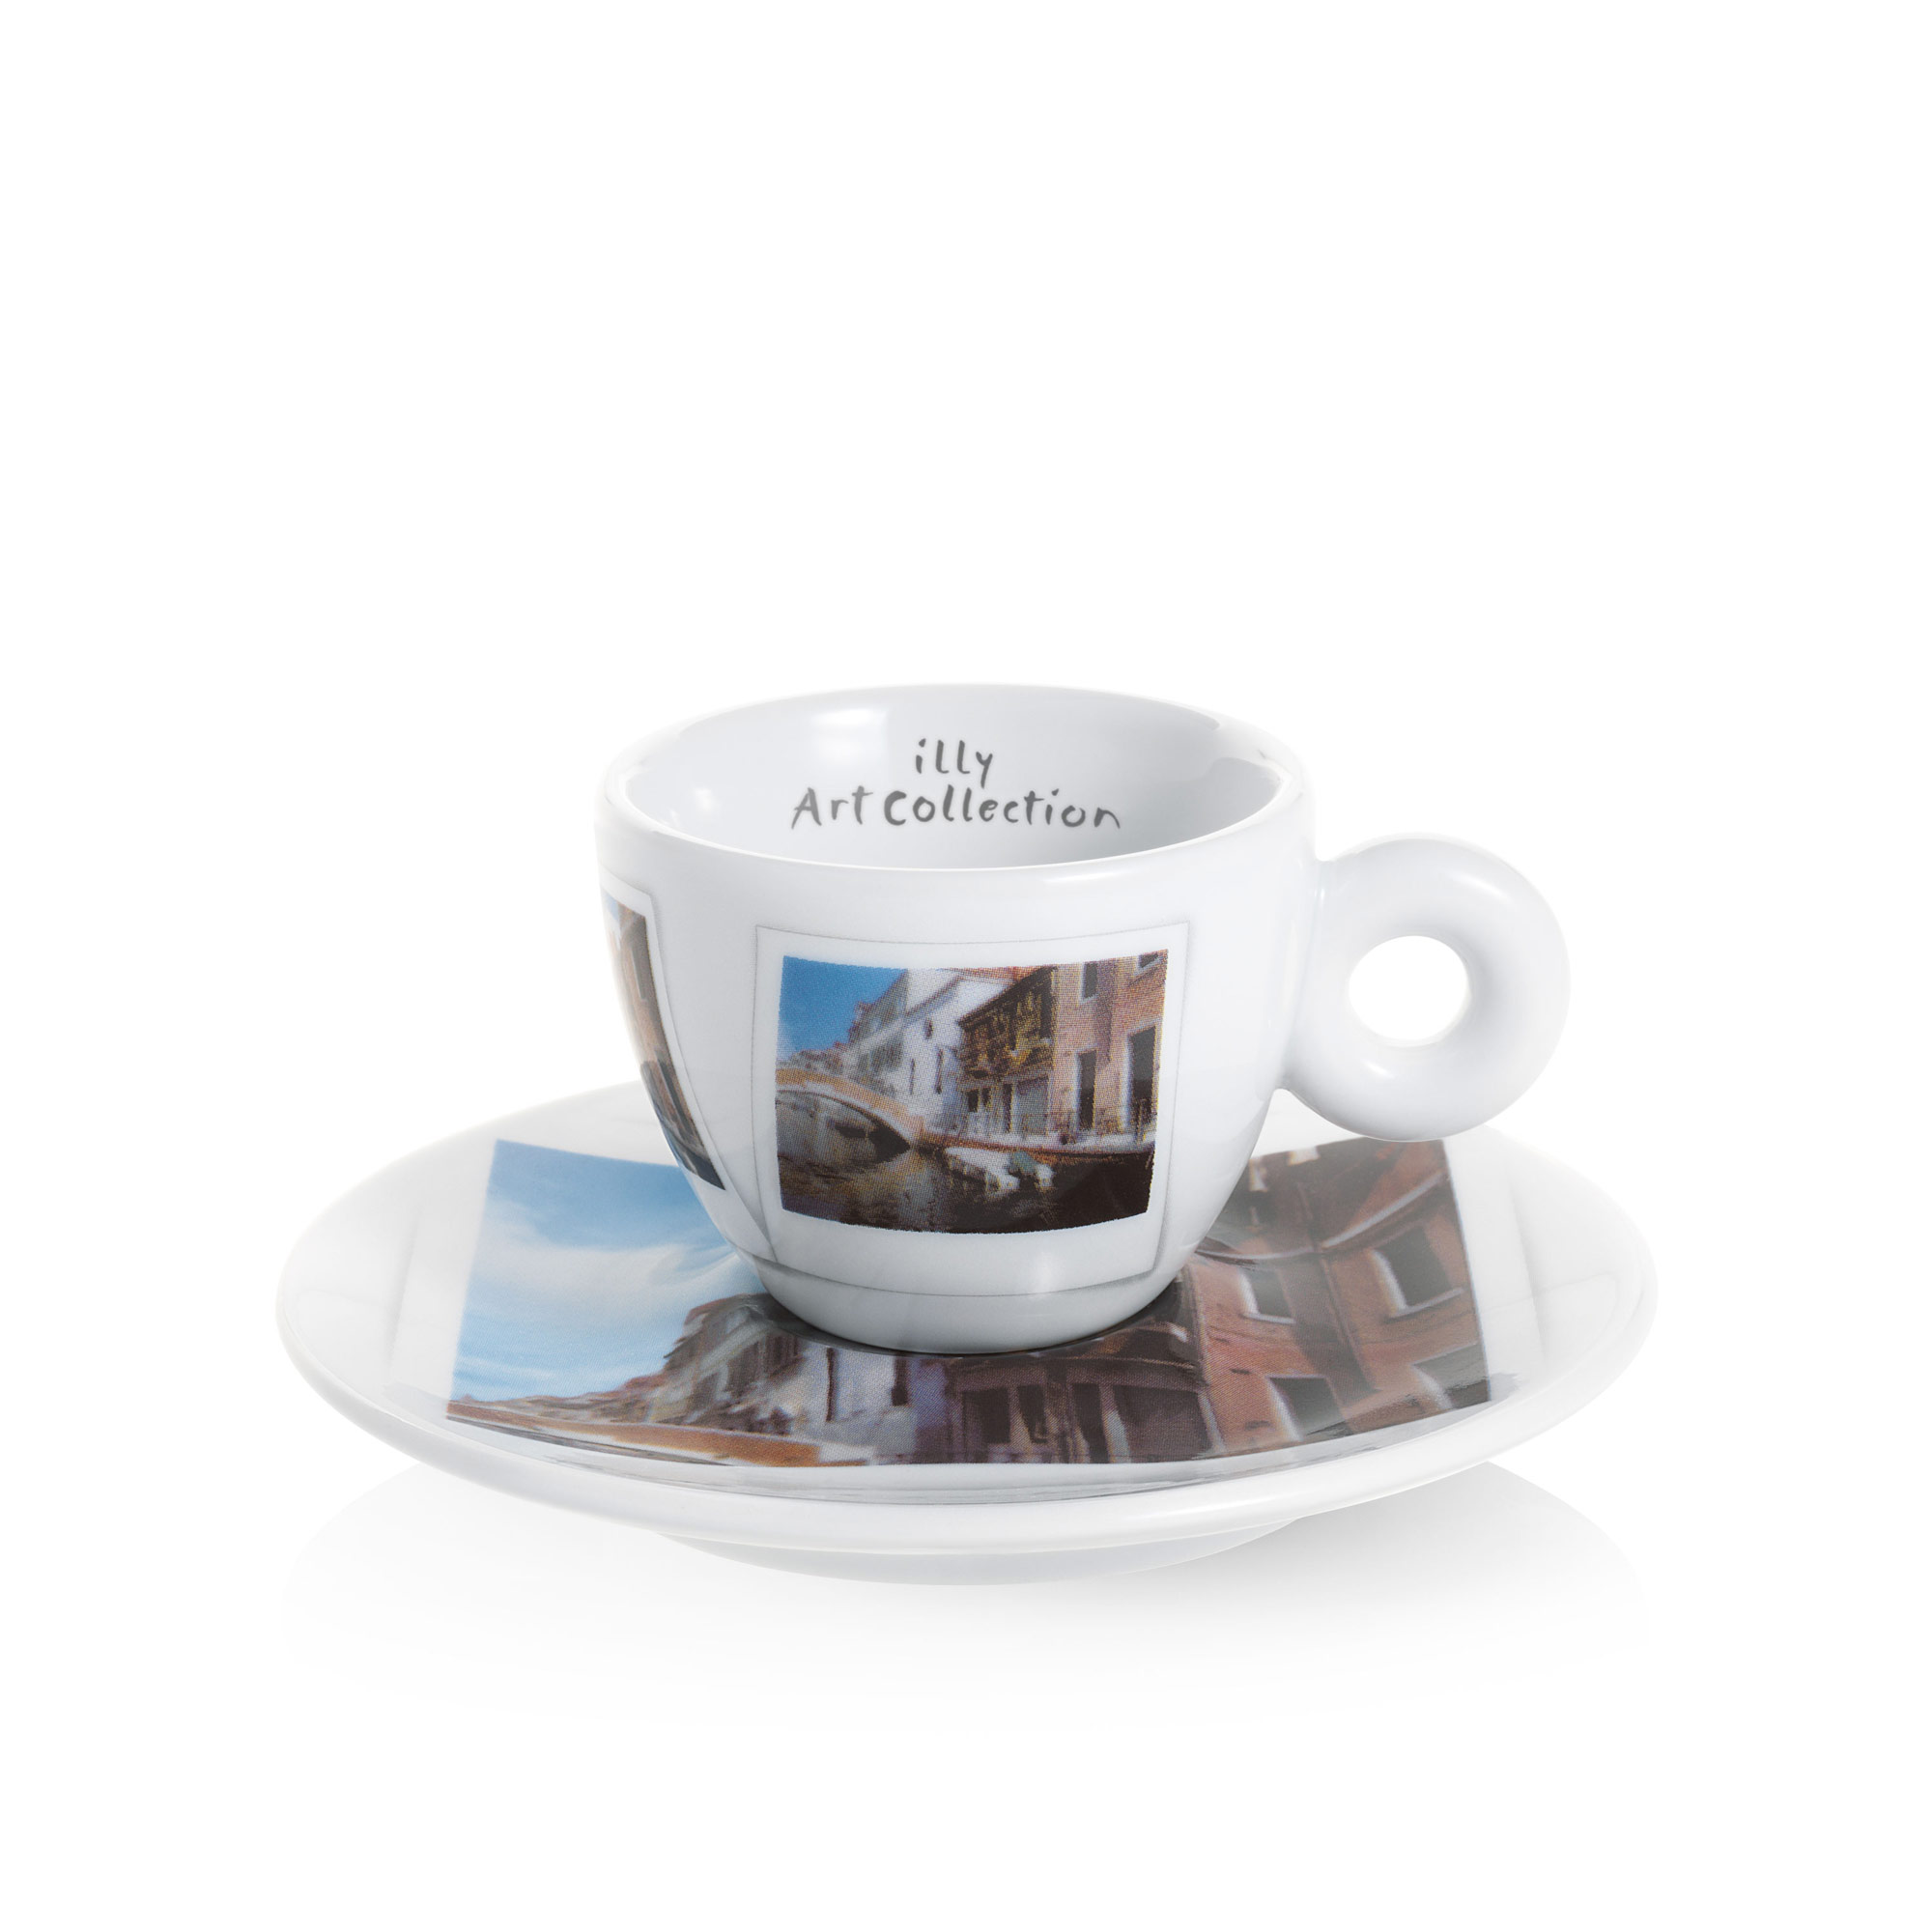 Maurizio Galimberti Collection Espresso Cup